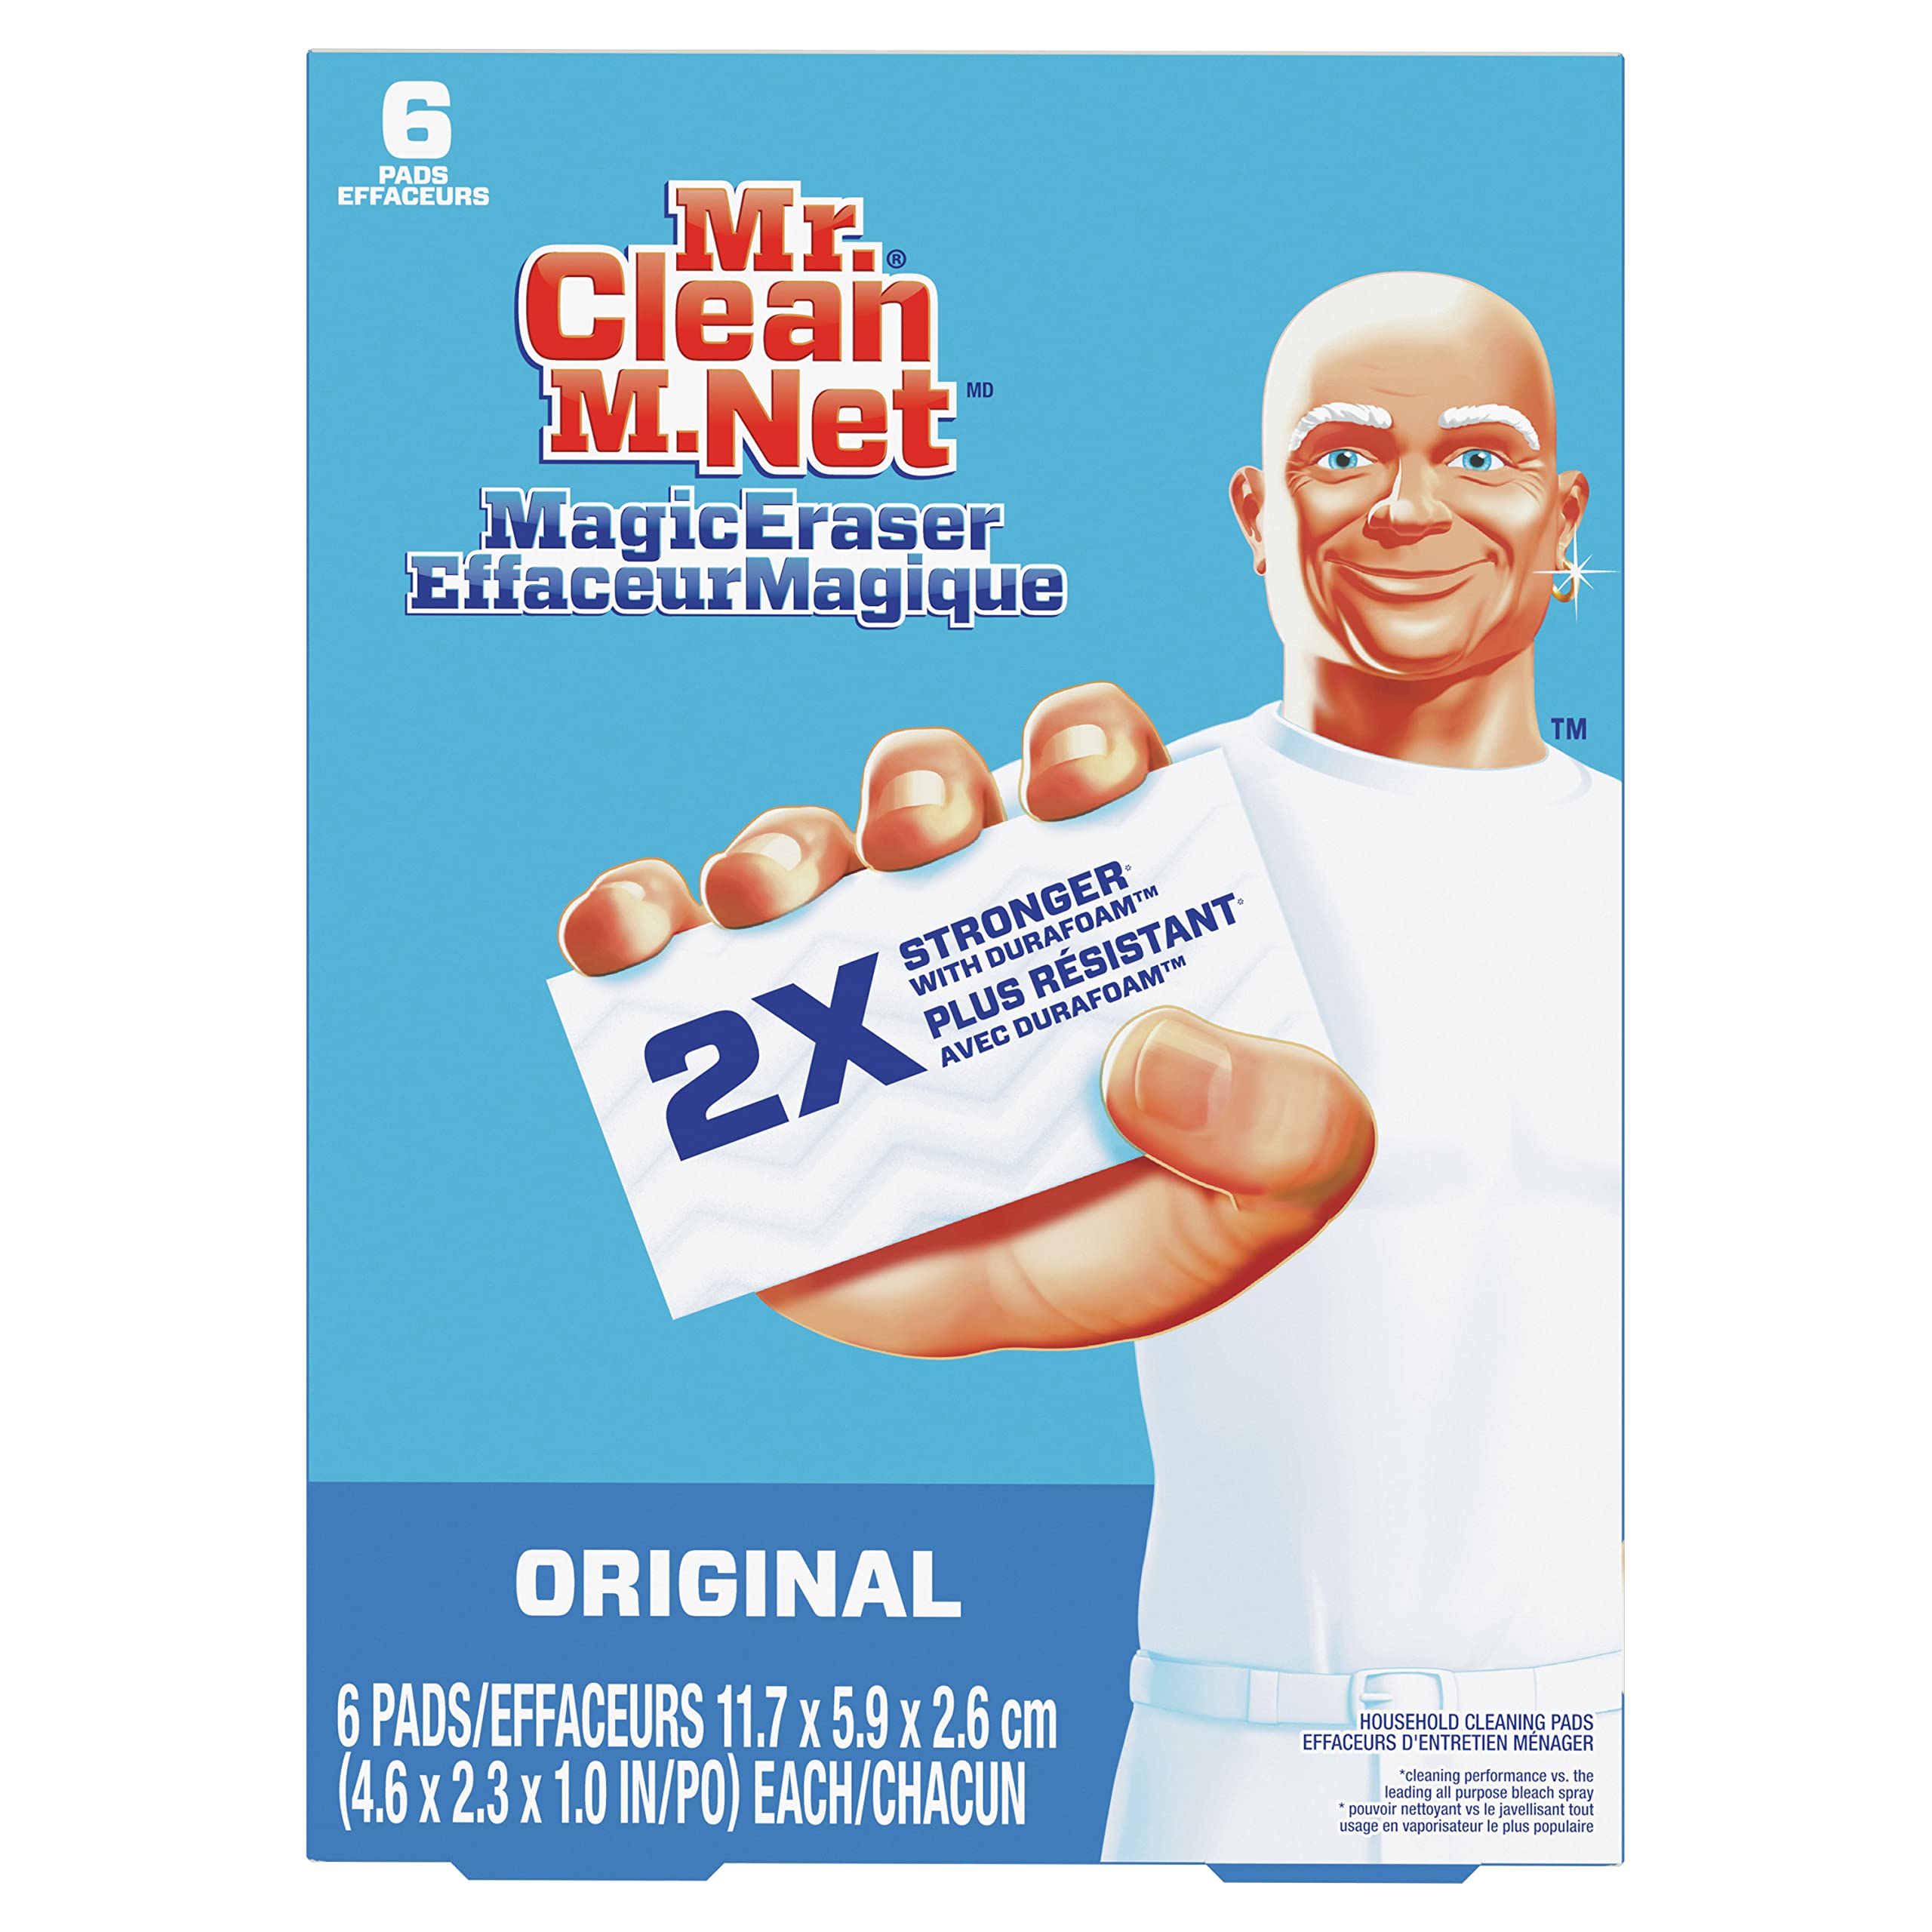 Không cần sử dụng hóa chất độc hại, chỉ với cục tẩy vết bẩn Mr. Clean Magic Eraser, mọi vết bẩn trên bề mặt đều sạch sẽ như mới. Hãy xem hình ảnh để chứng kiến kết quả bất ngờ mà sản phẩm này mang lại.